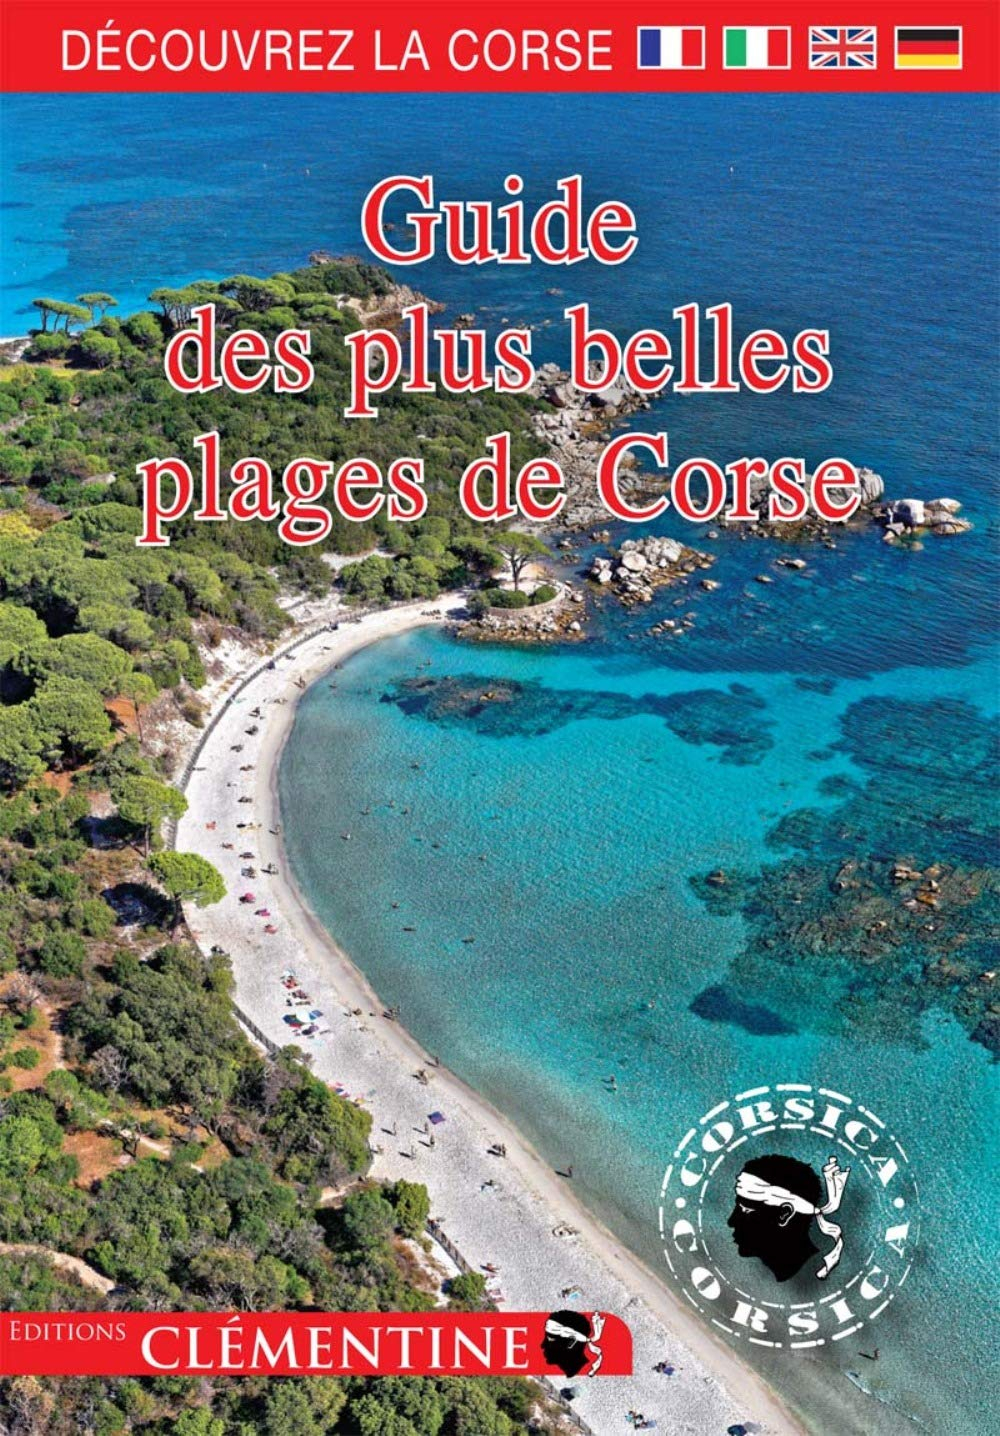 Guide des plus belles plages de Corse. The guide to Corsican beaches. La guida delle spiagge corse